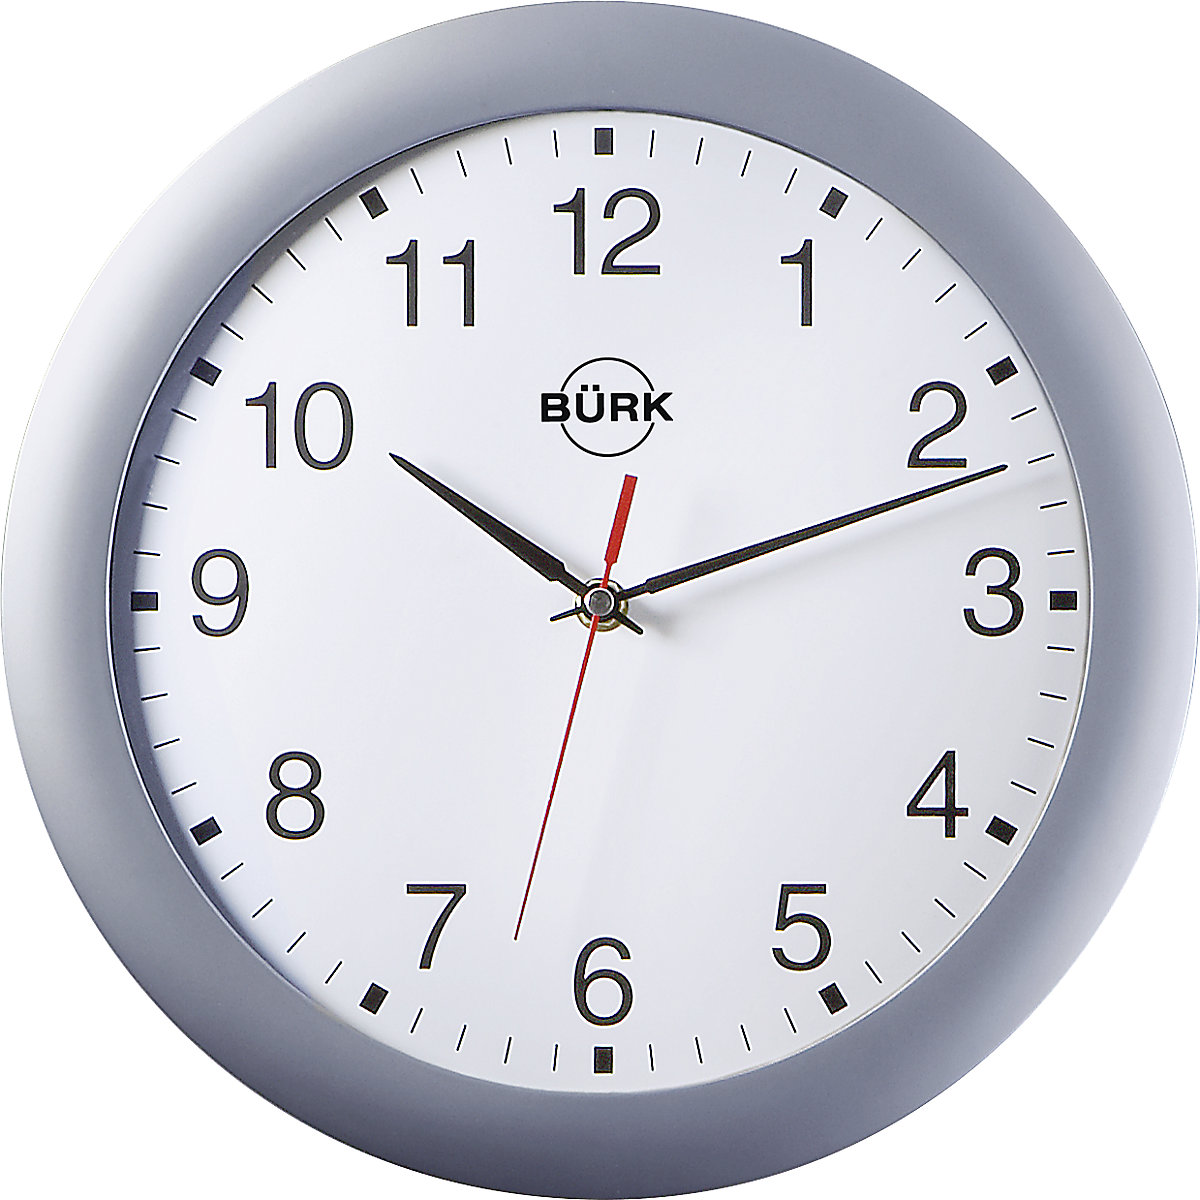 Nástěnné hodiny z plastu ABS, Ø 300 mm, kvalitní Quartz mechanismus, stříbrné matné pouzdro, bílý číselník